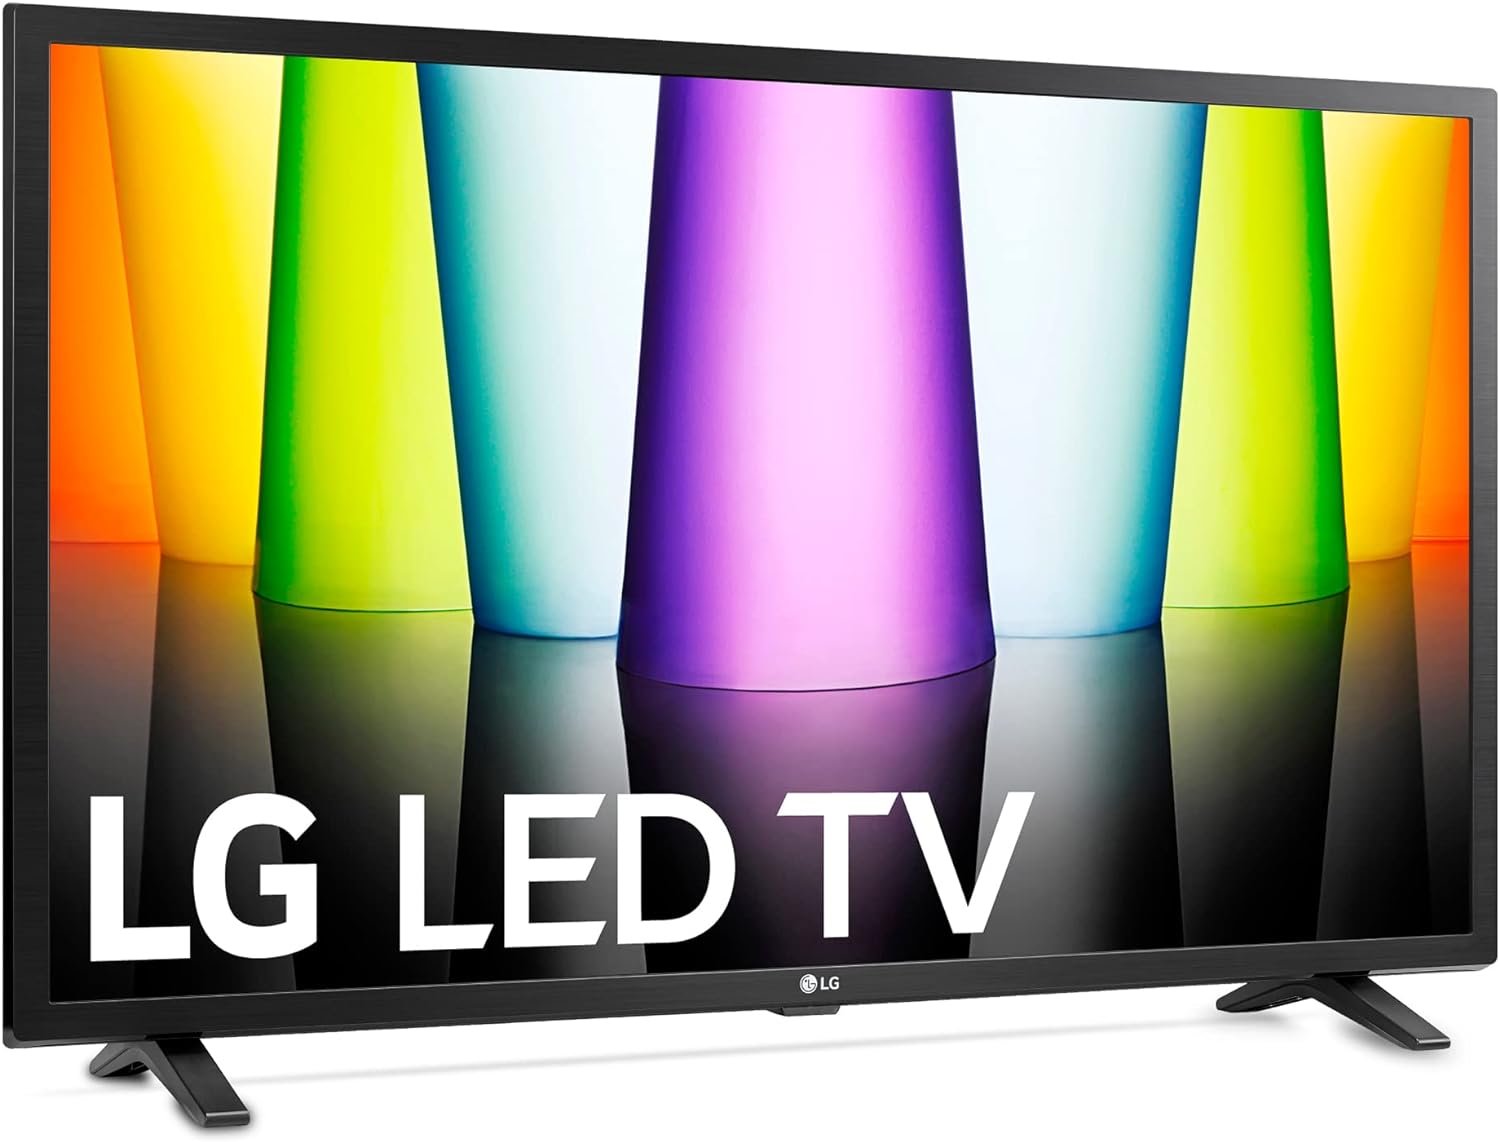 LG Smart TV 32LQ63